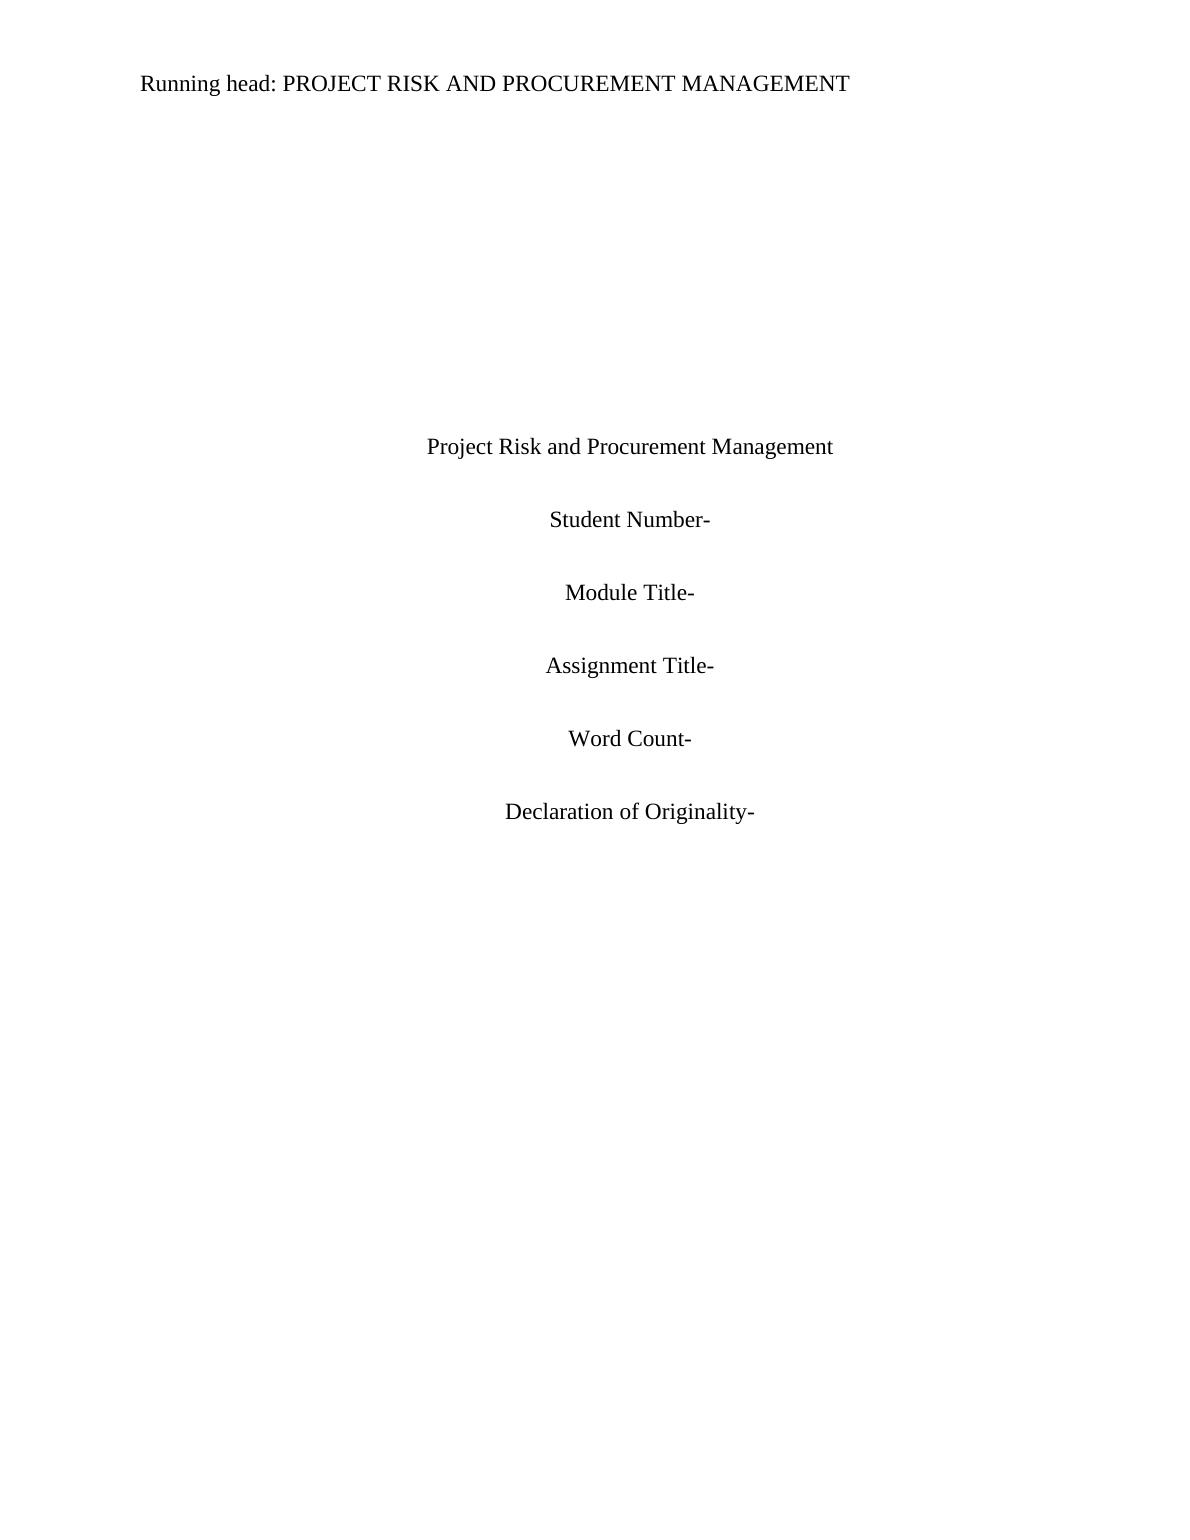 Assignment for Project Risk & Procurement Management_1